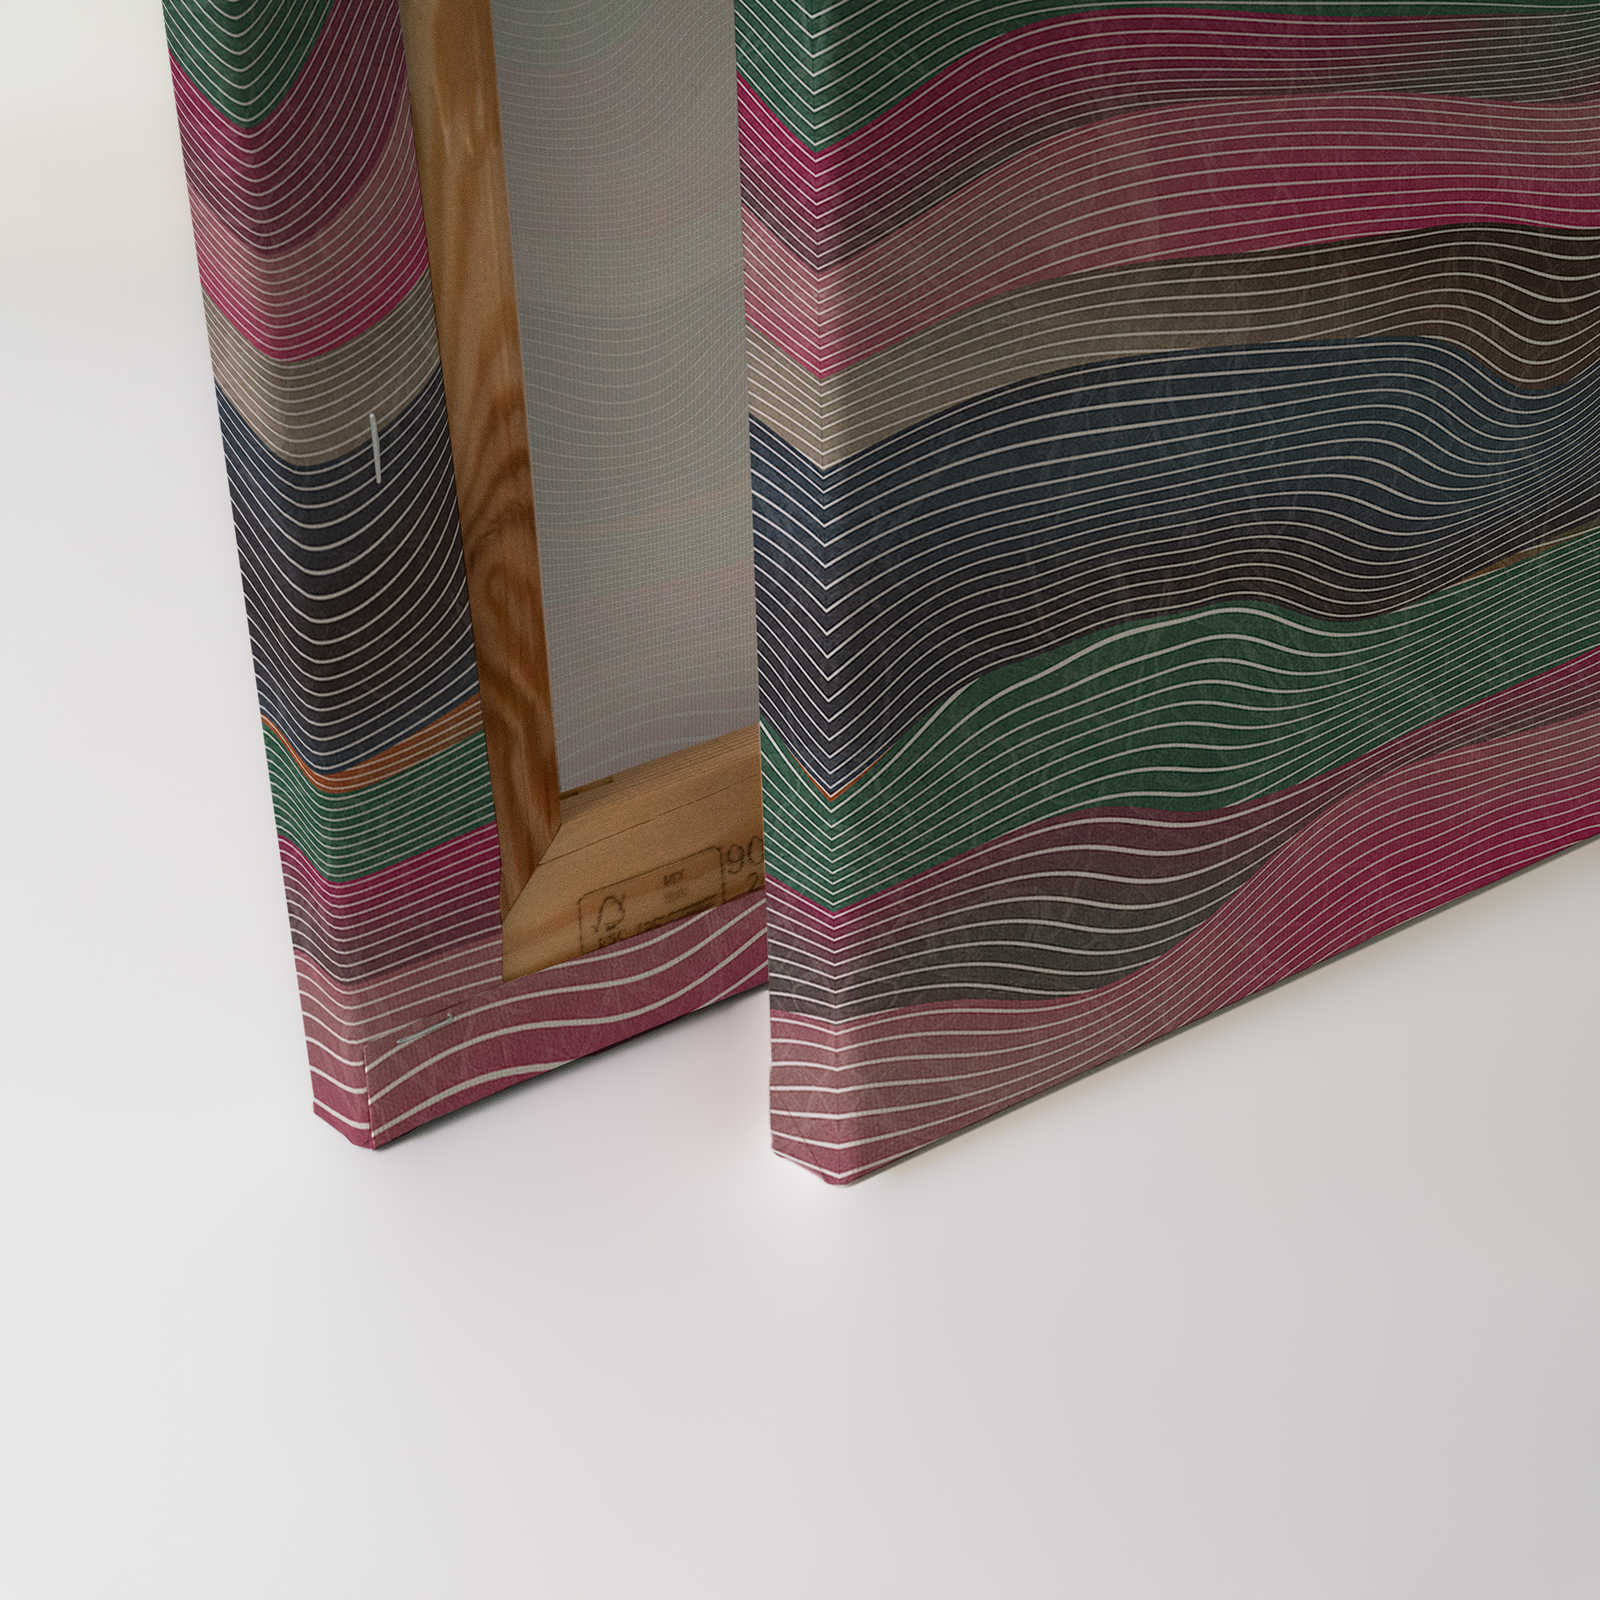             Space 1 - Toile motif vagues rose & vert style rétro - 1,20 m x 0,80 m
        